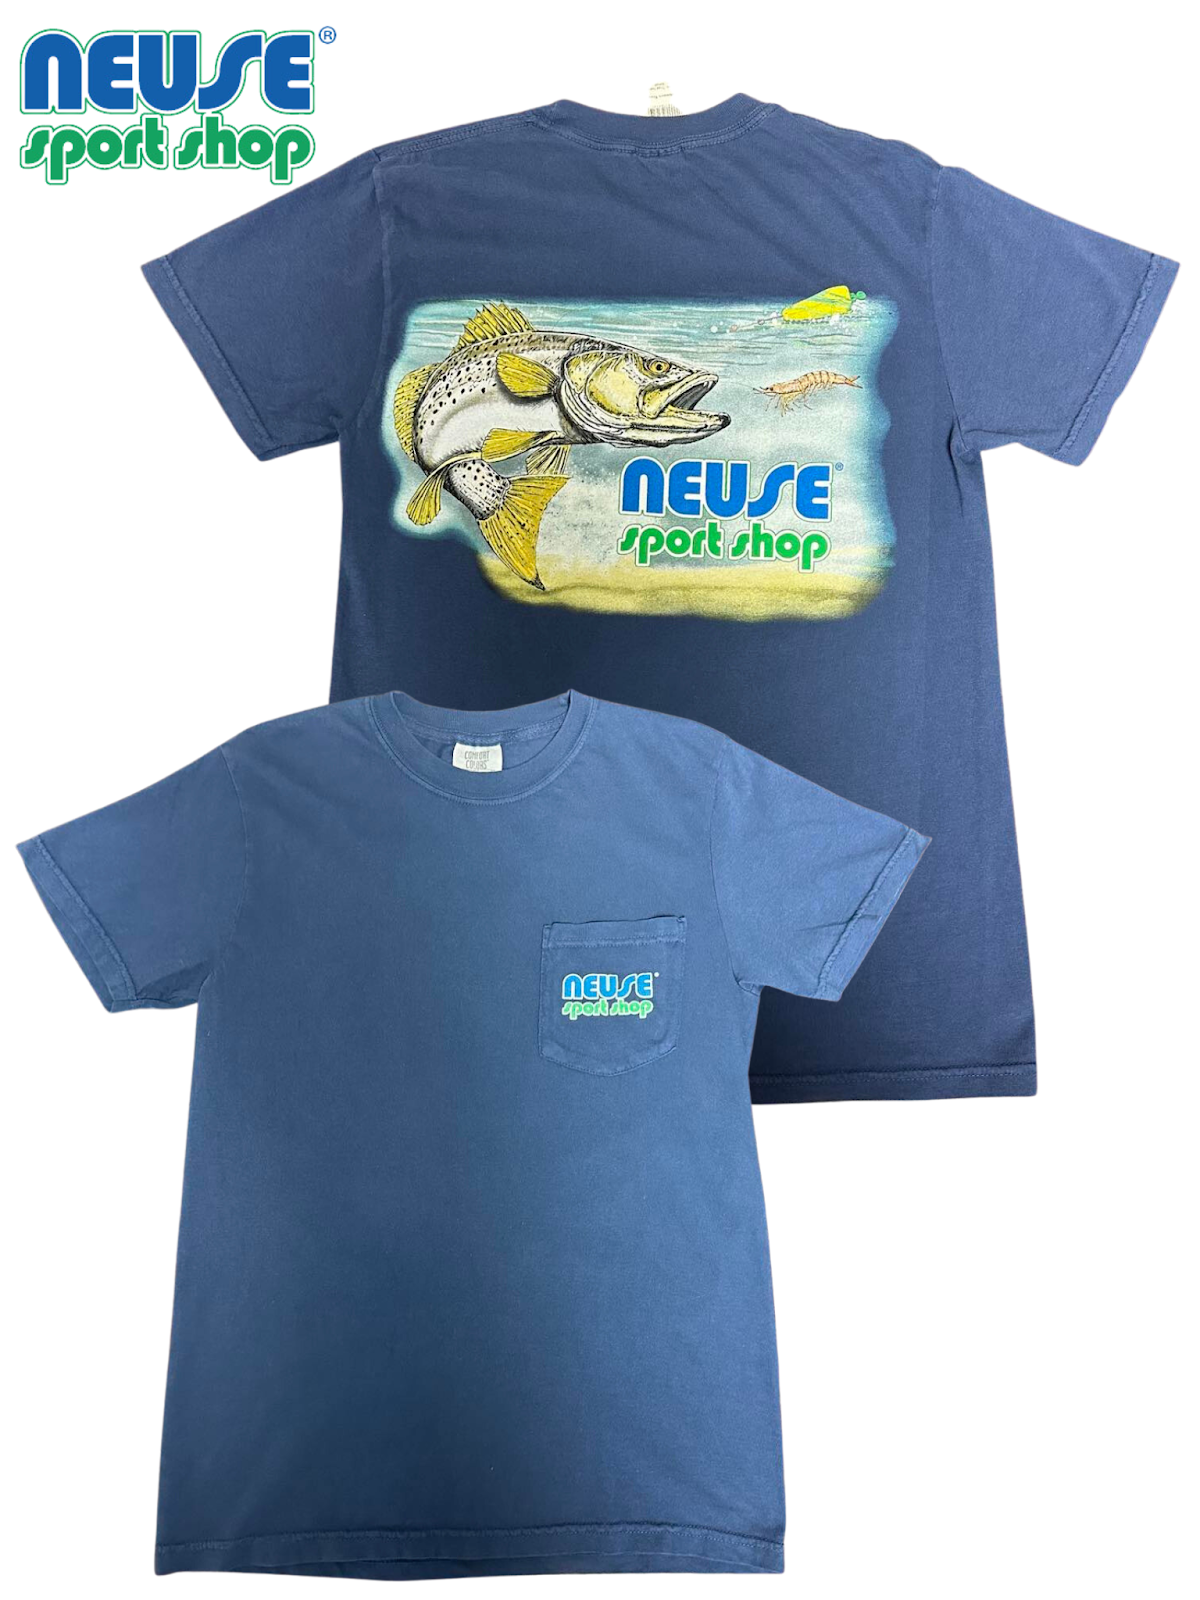 Neuse Sport Shop “Riekmann Trout” Short Sleeve Pocketed T-Shirt